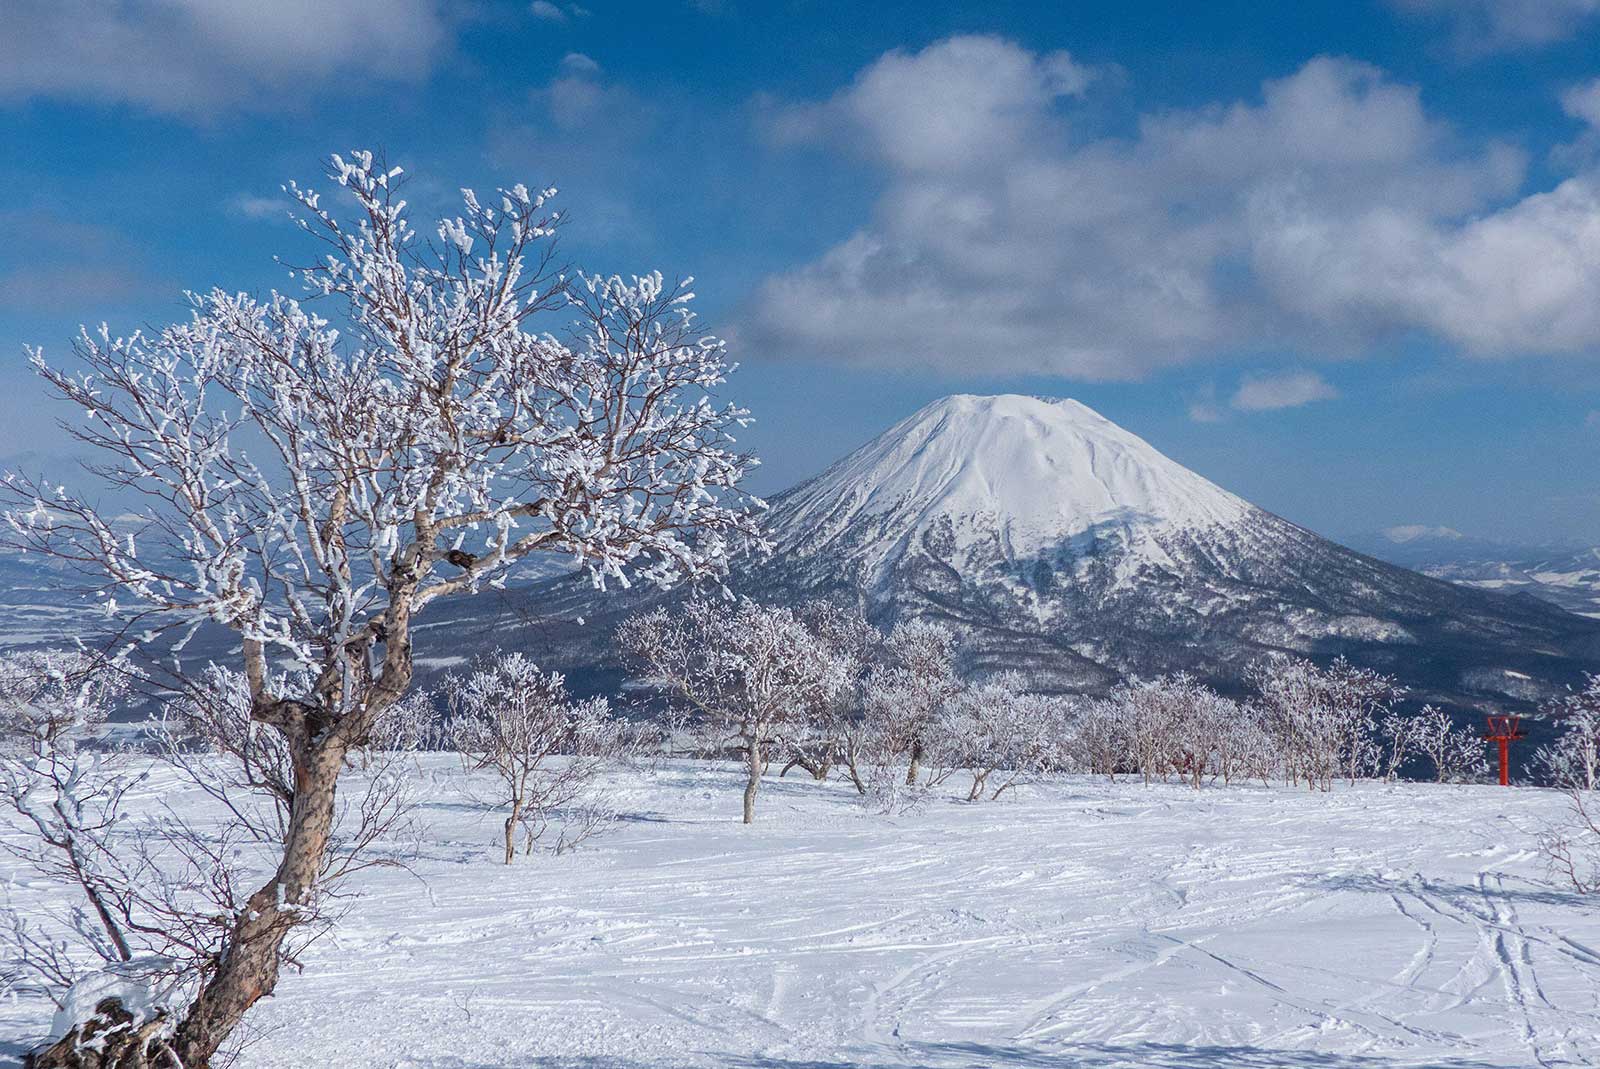 Ski resort in Niseko overlooking Mount Yotei